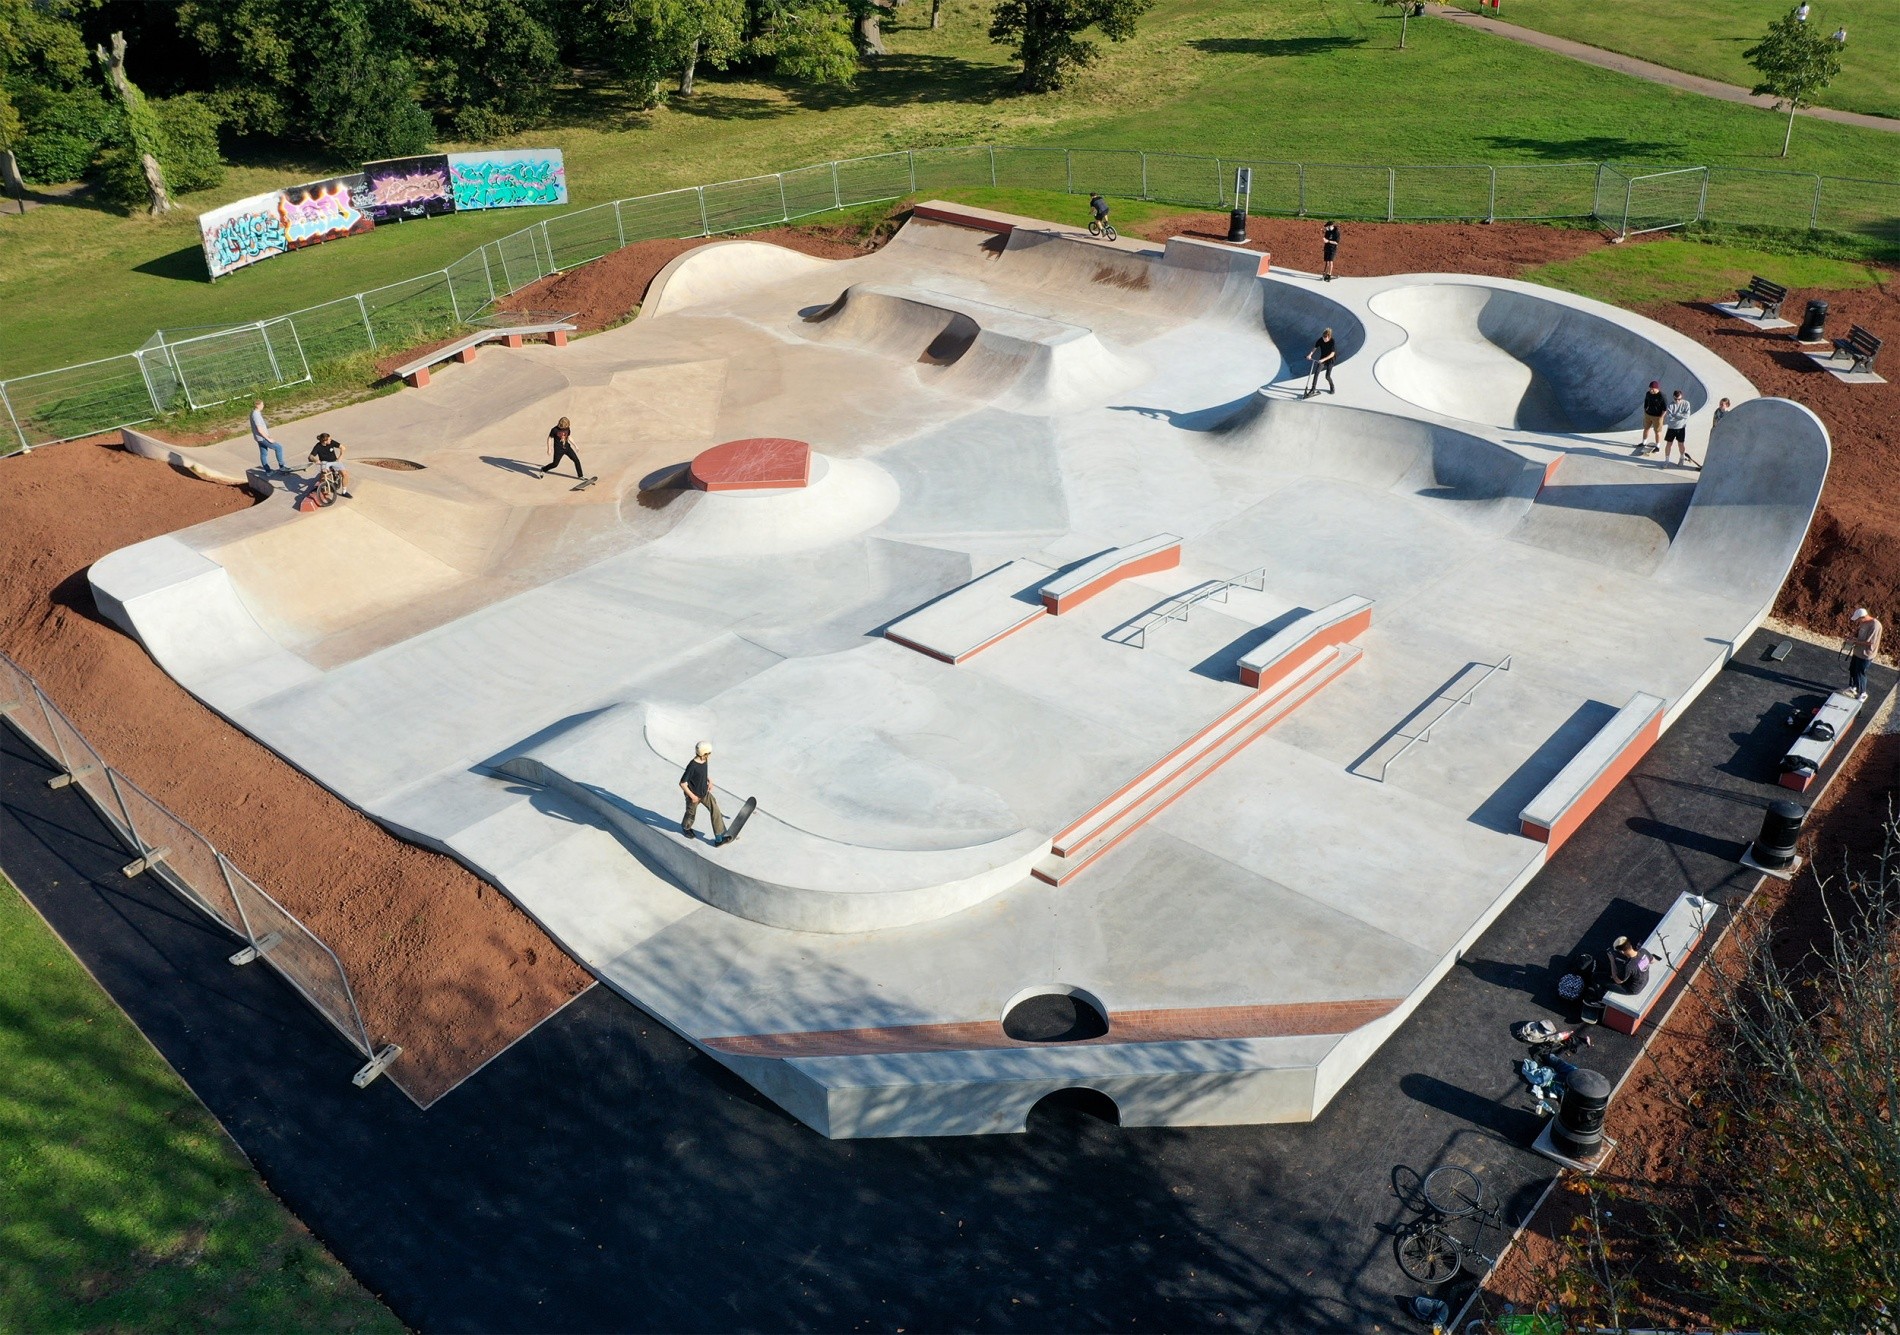 Phear Park skatepark